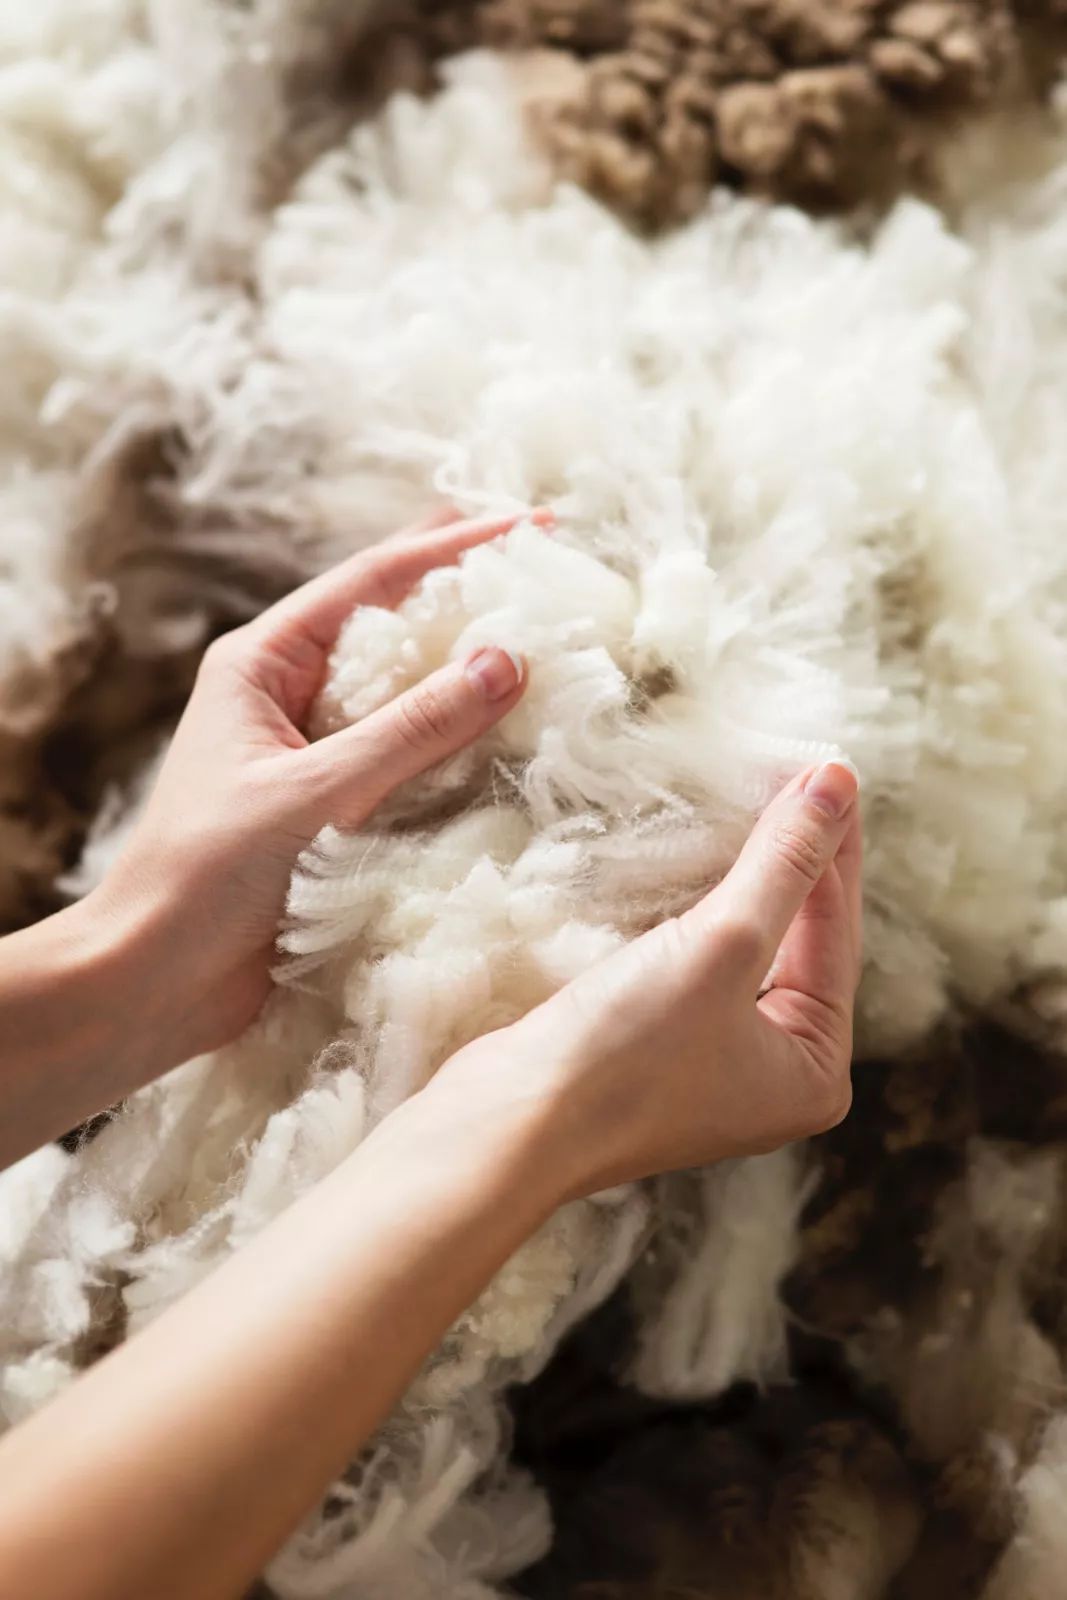 澳大利亚剪羊毛表演-中关村在线摄影论坛